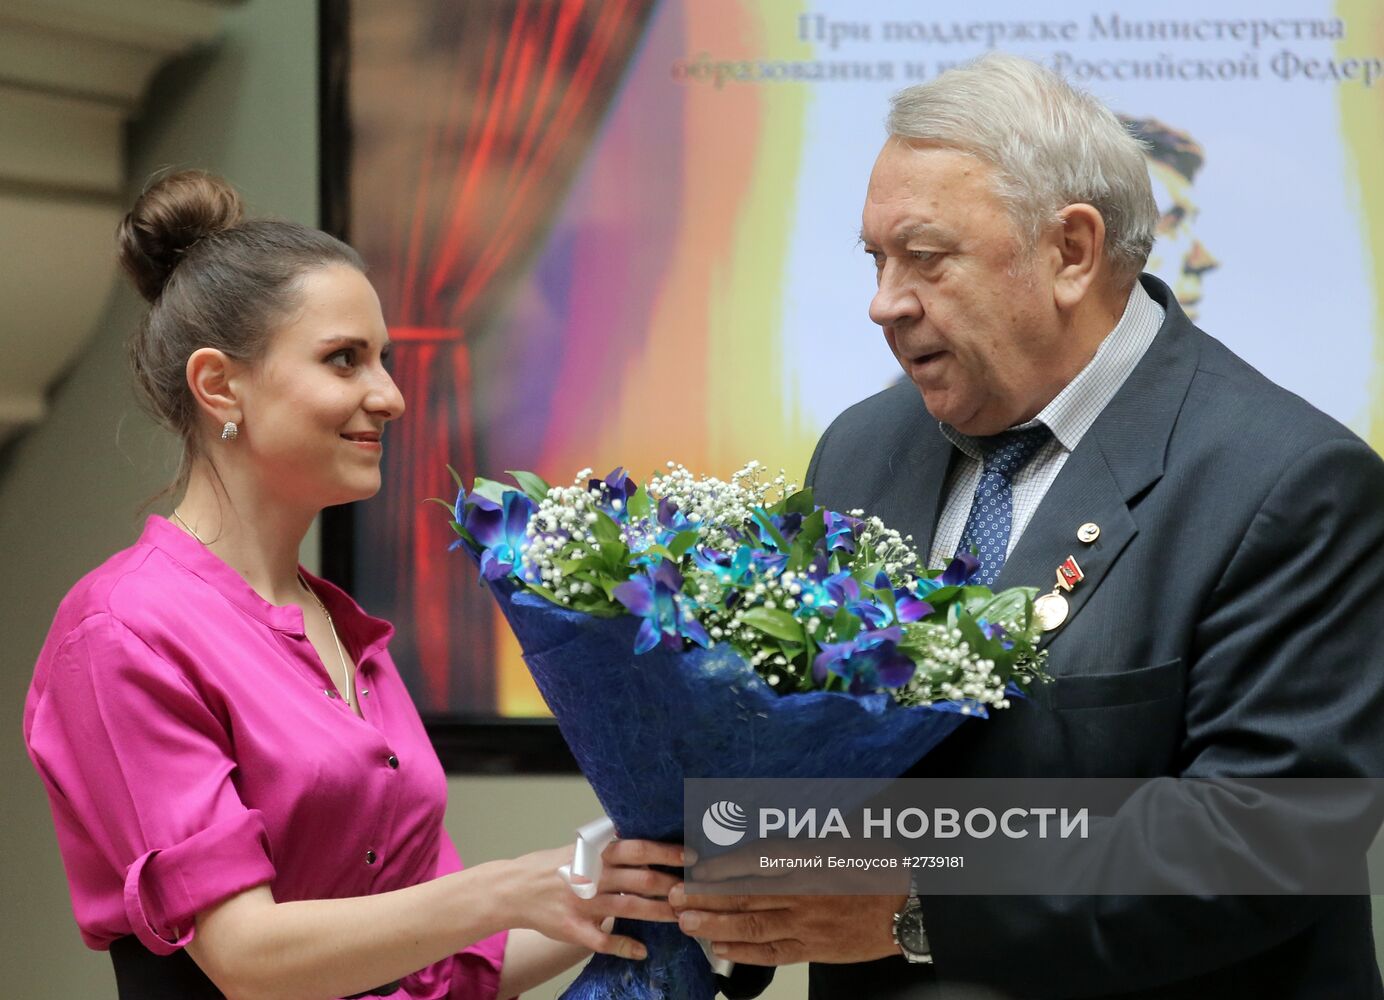 Пятая церемония вручения Золотой медали имени Льва Николаева выдающимся деятелям науки и культуры современности